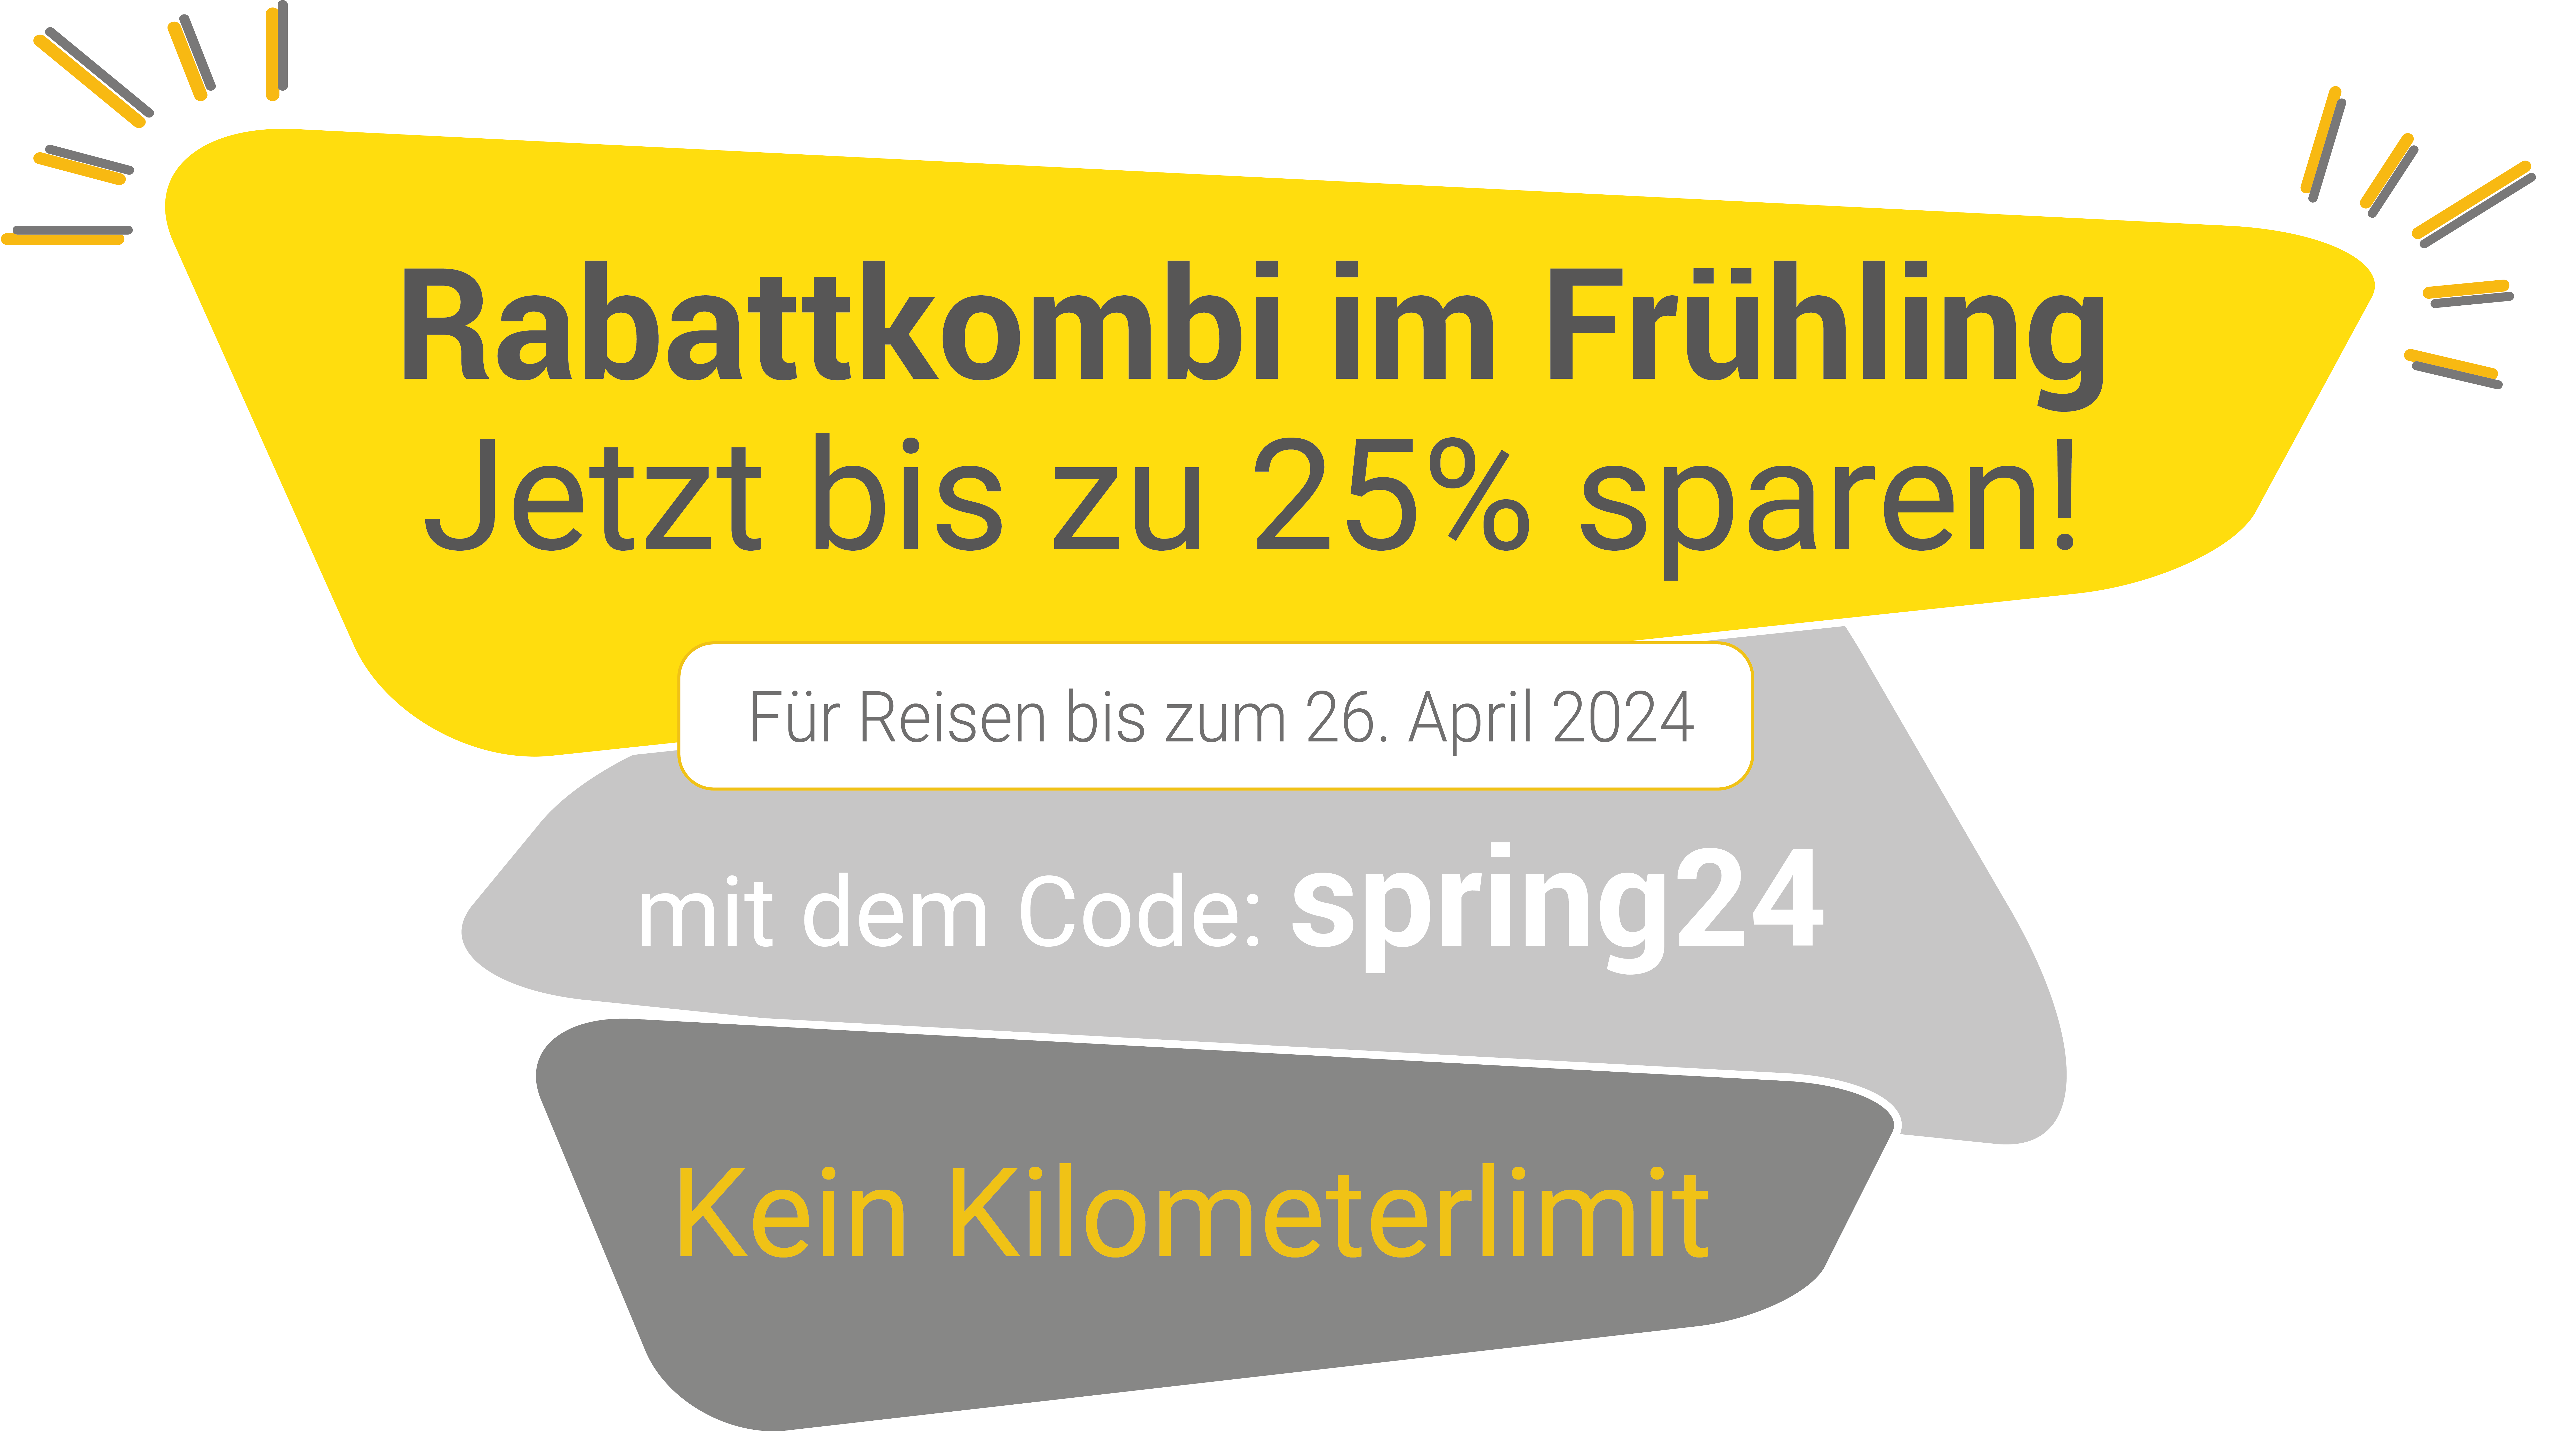 Grafik mit Info zum Frühlingsrabatt in Höhe von bis zu 25%